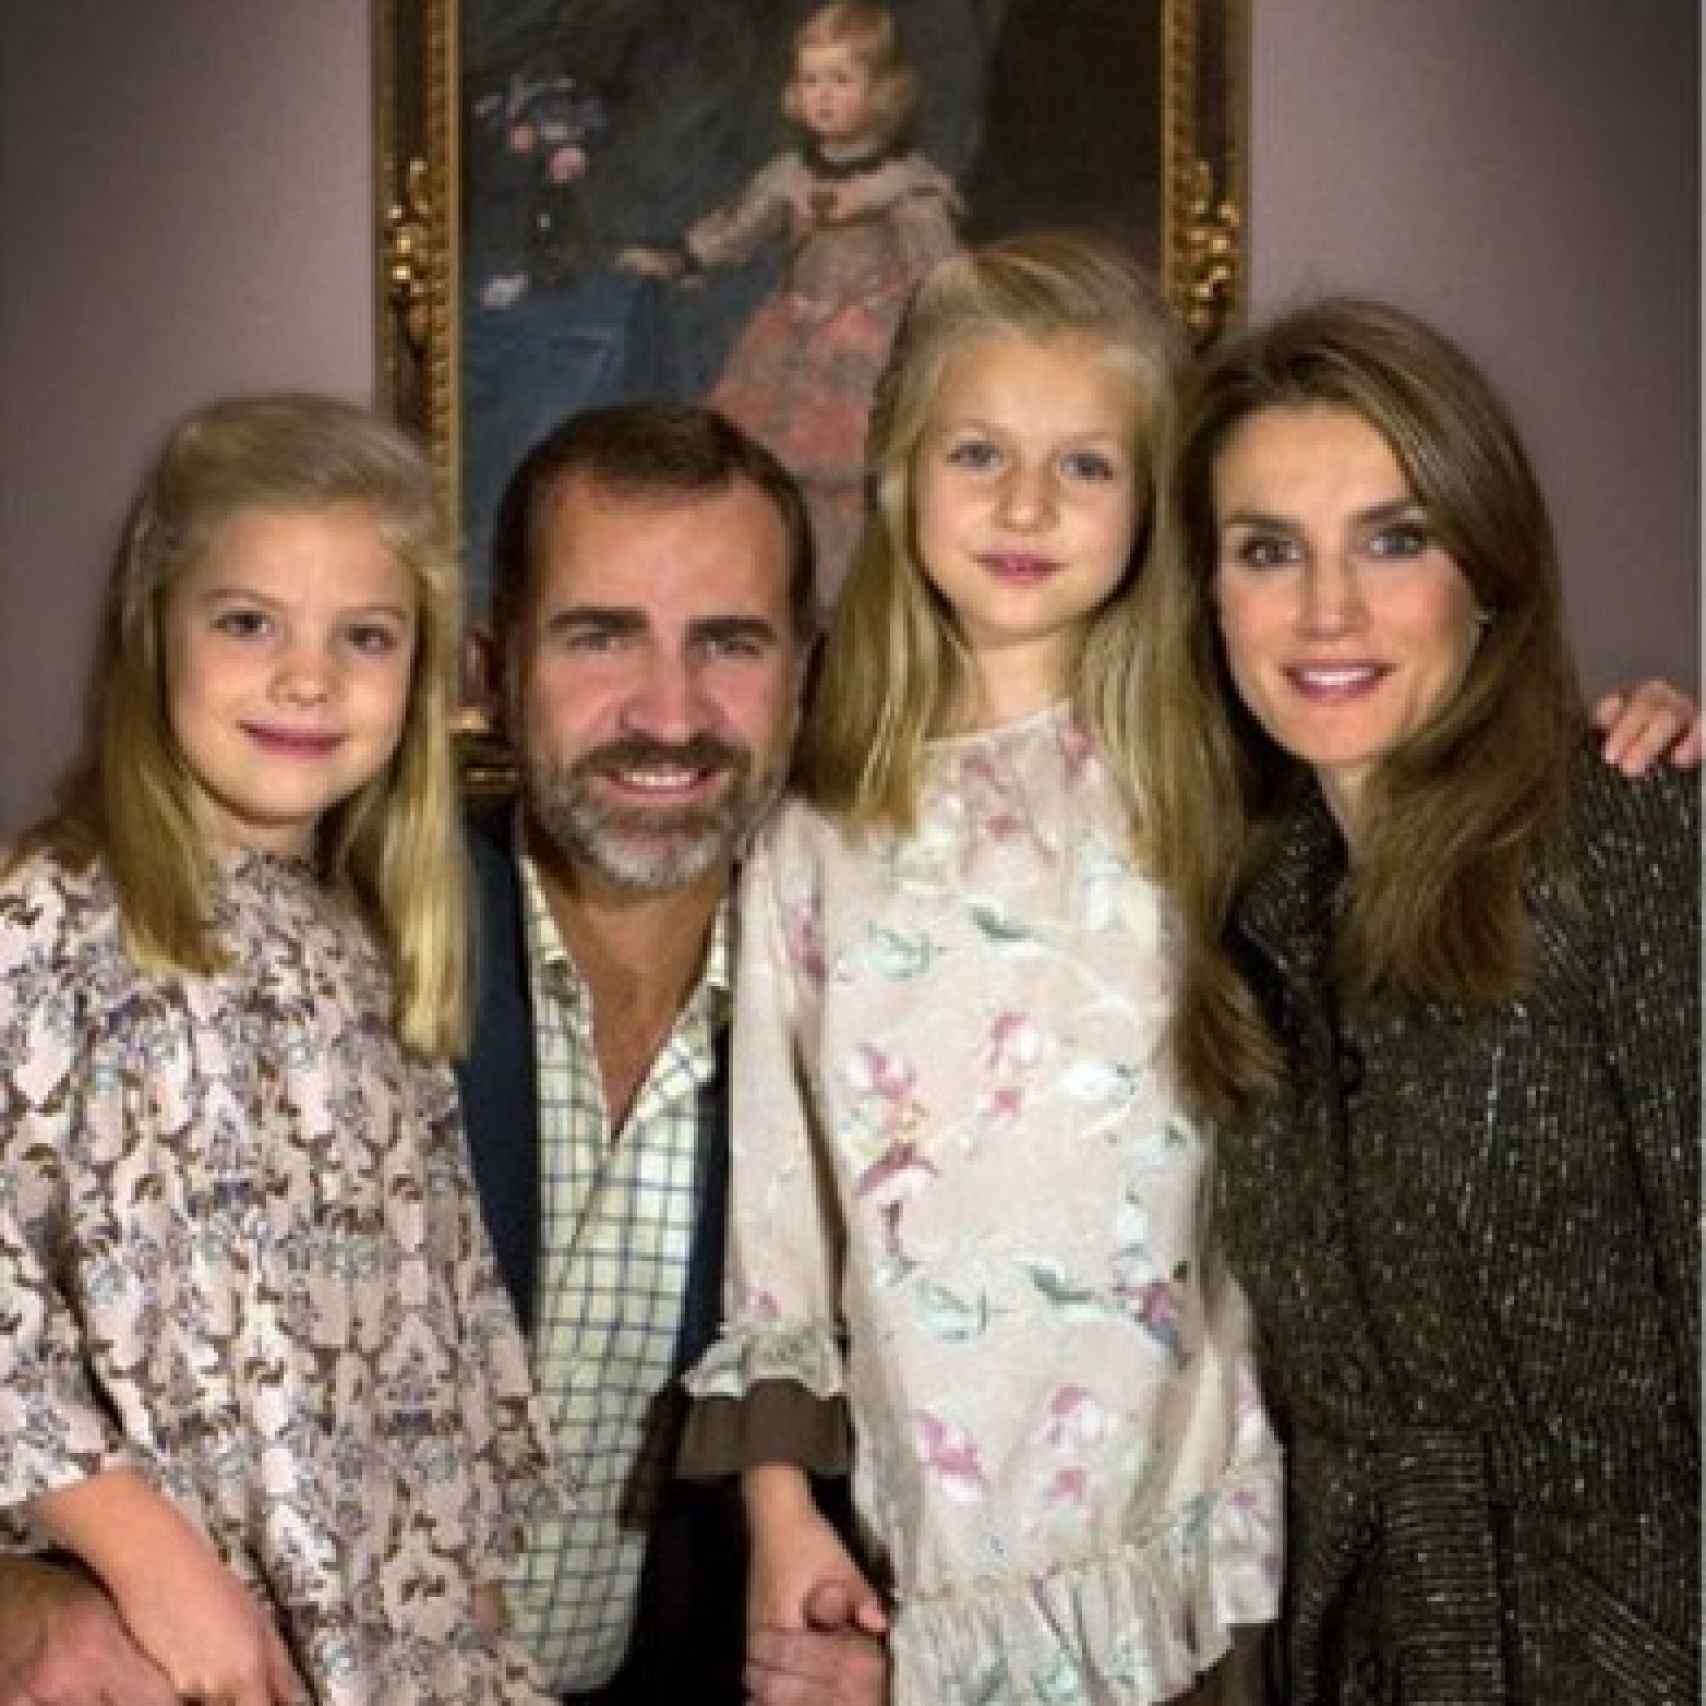 Imagen casera con la que los Príncipes de Asturias y sus hijas felicitaron las fiestas navideñas de 2013